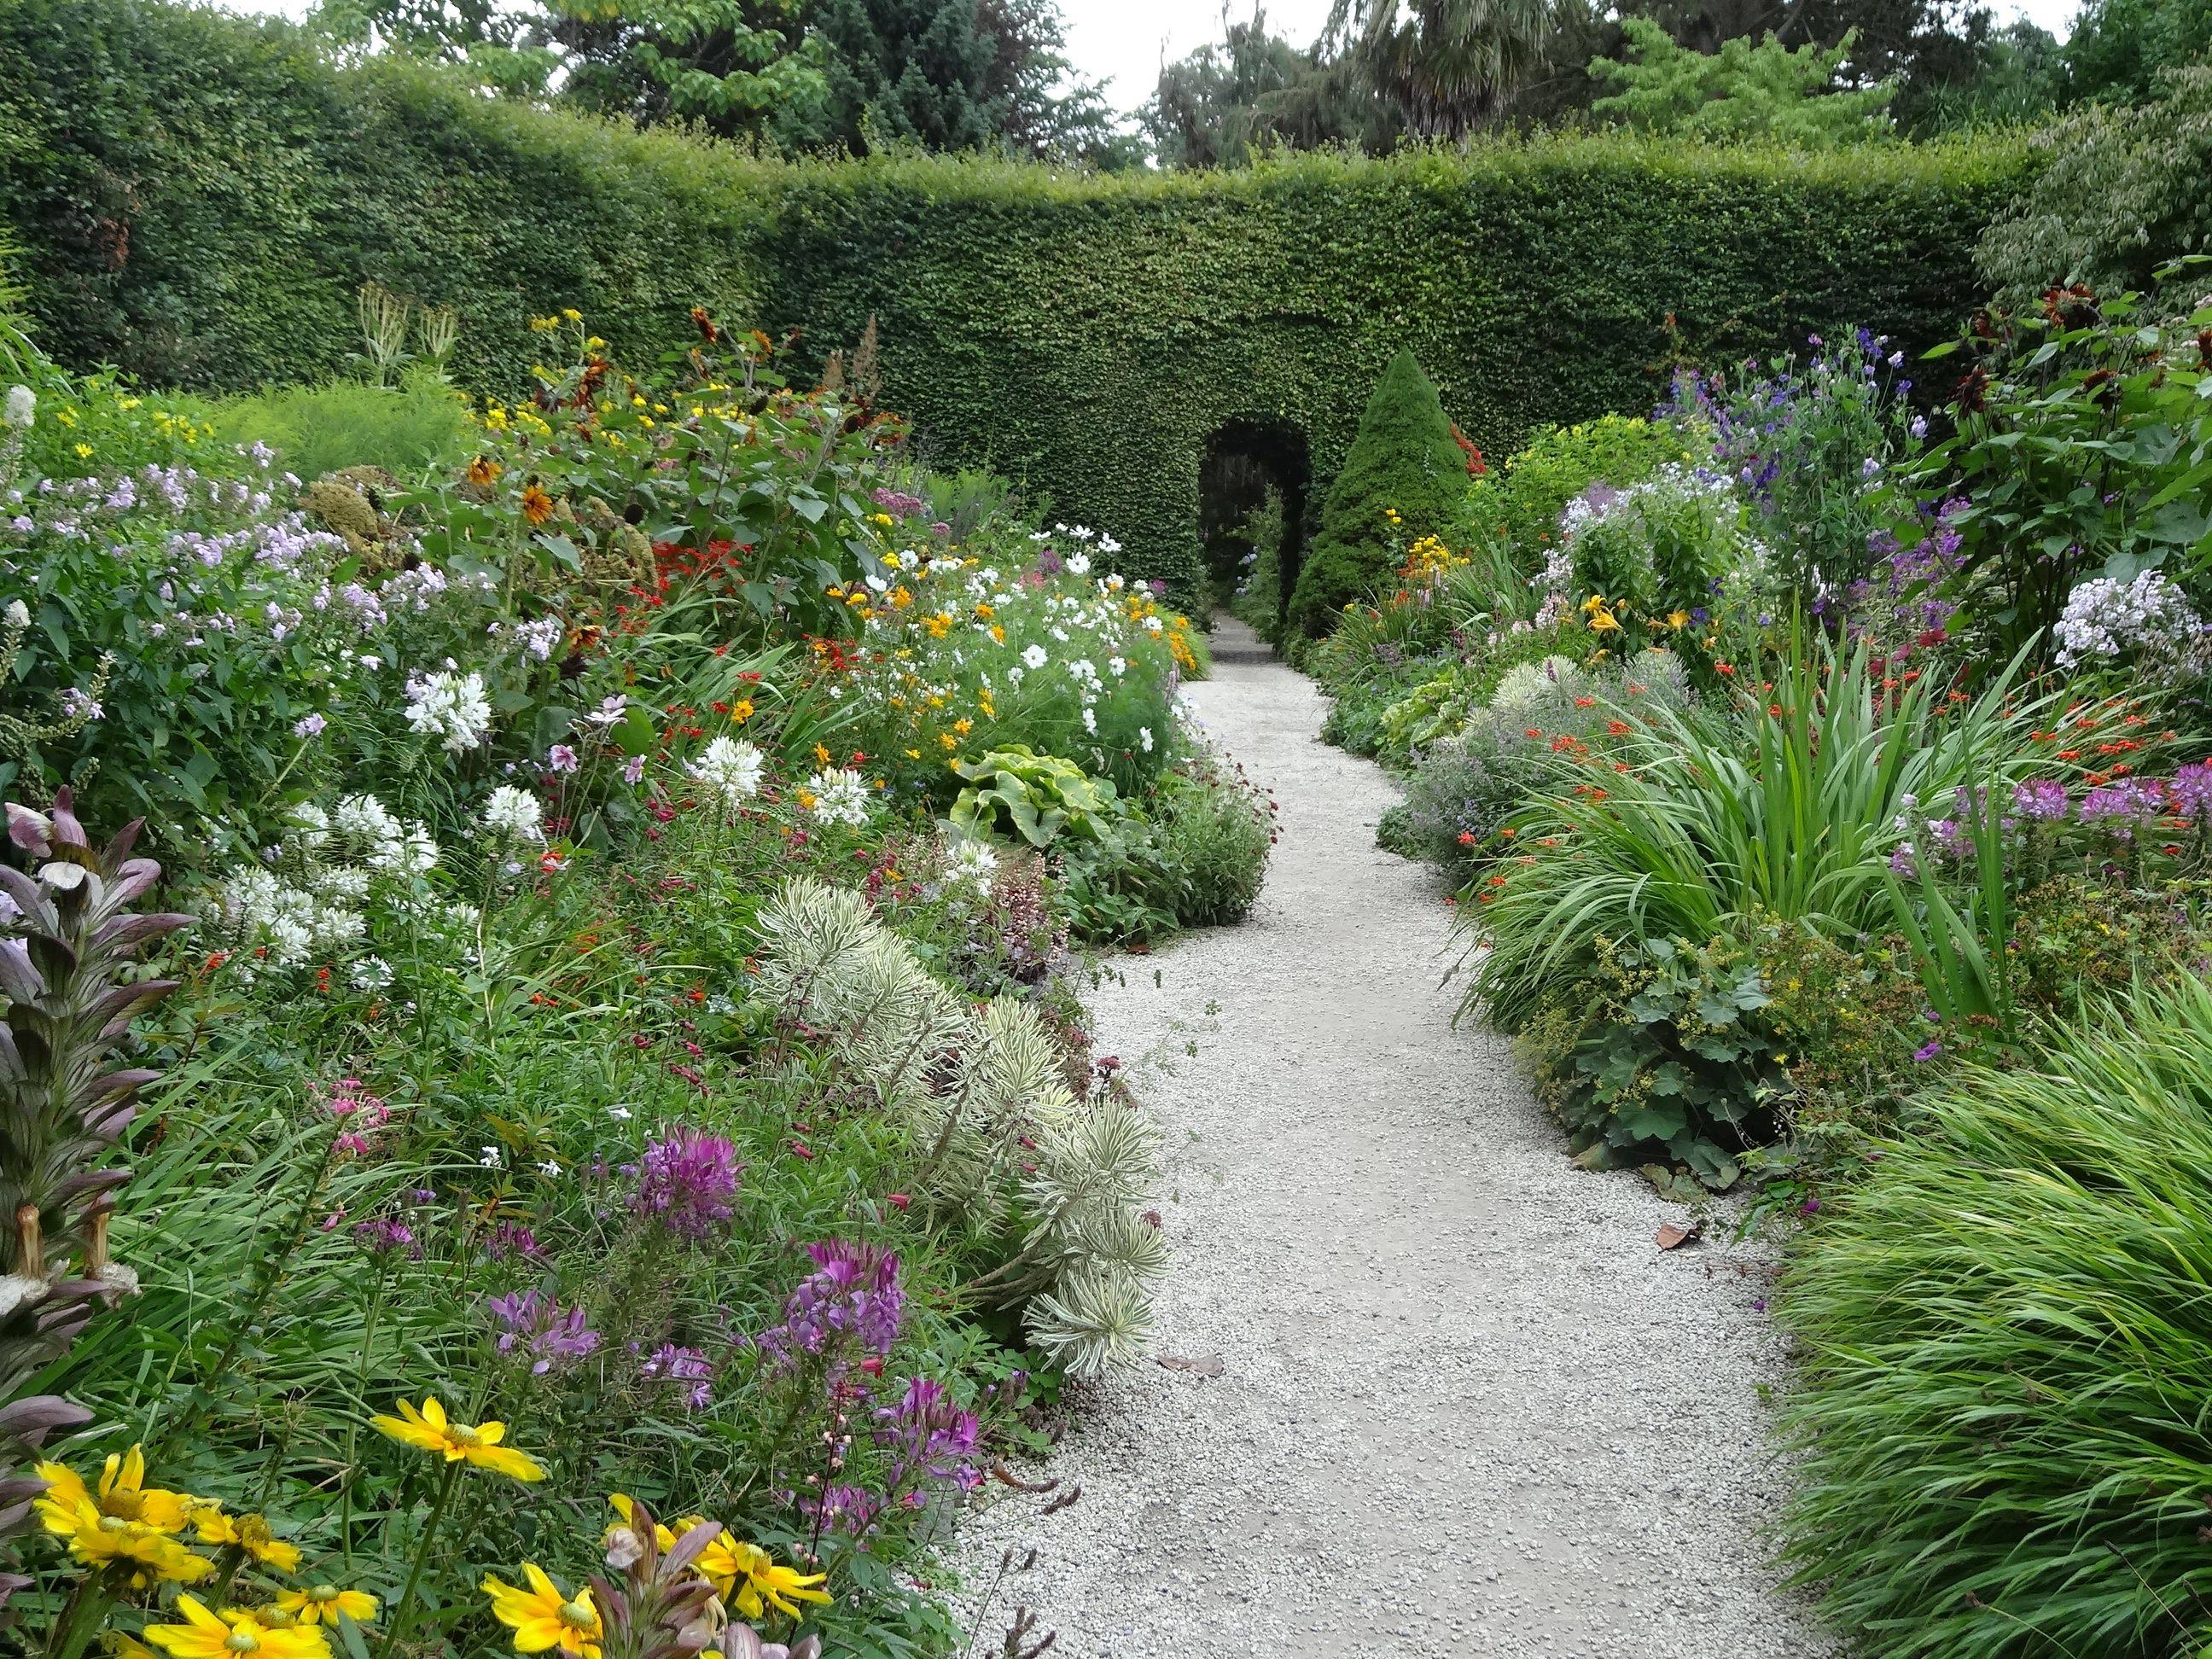 Charming English Garden Designs